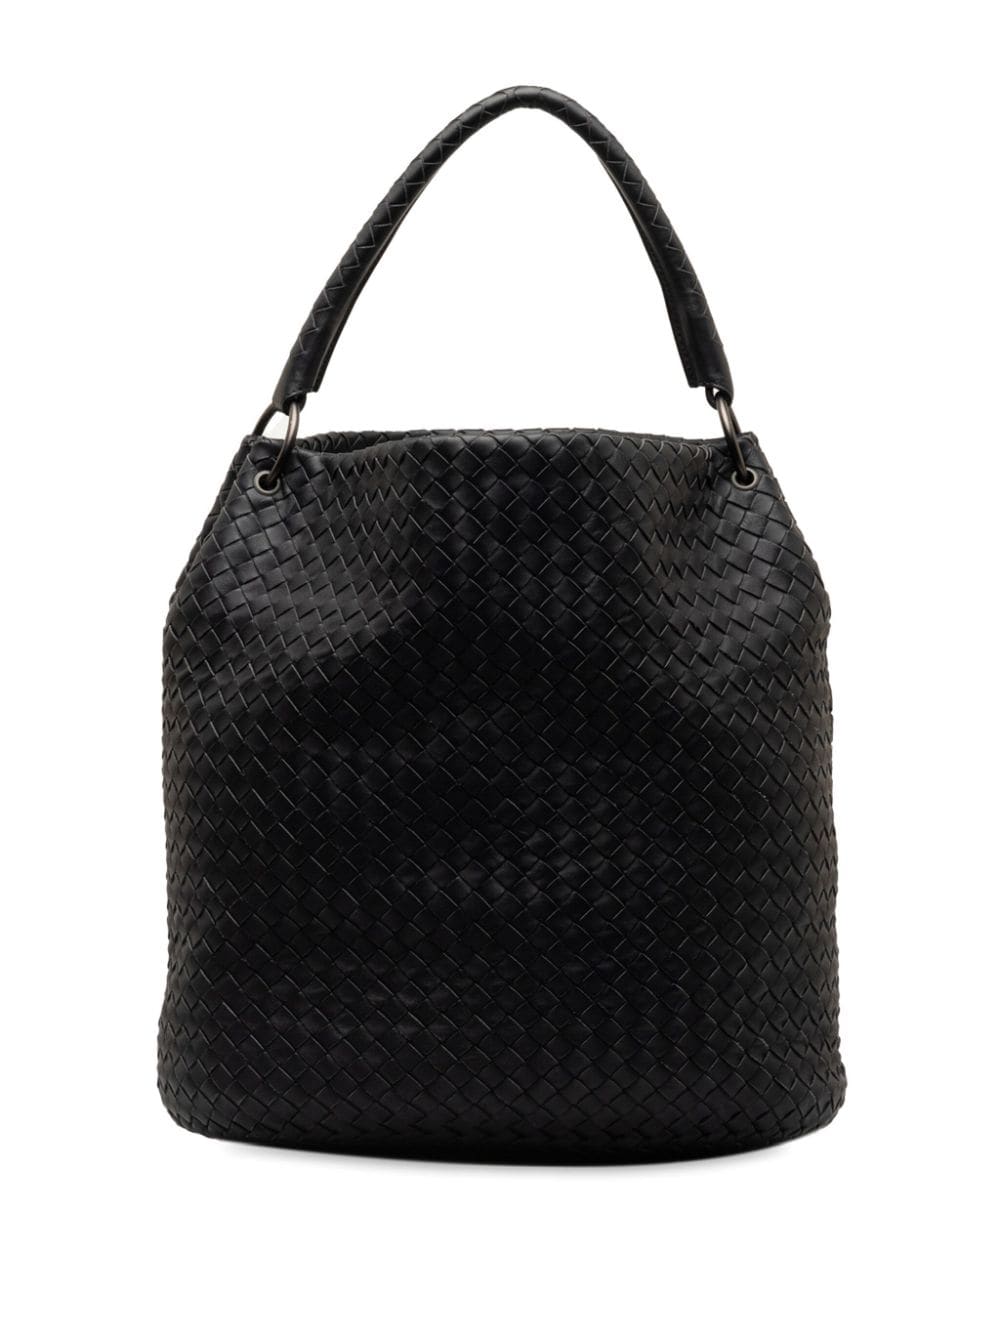 Pre-owned Bottega Veneta 2011 Intrecciato Tote Bag In Black